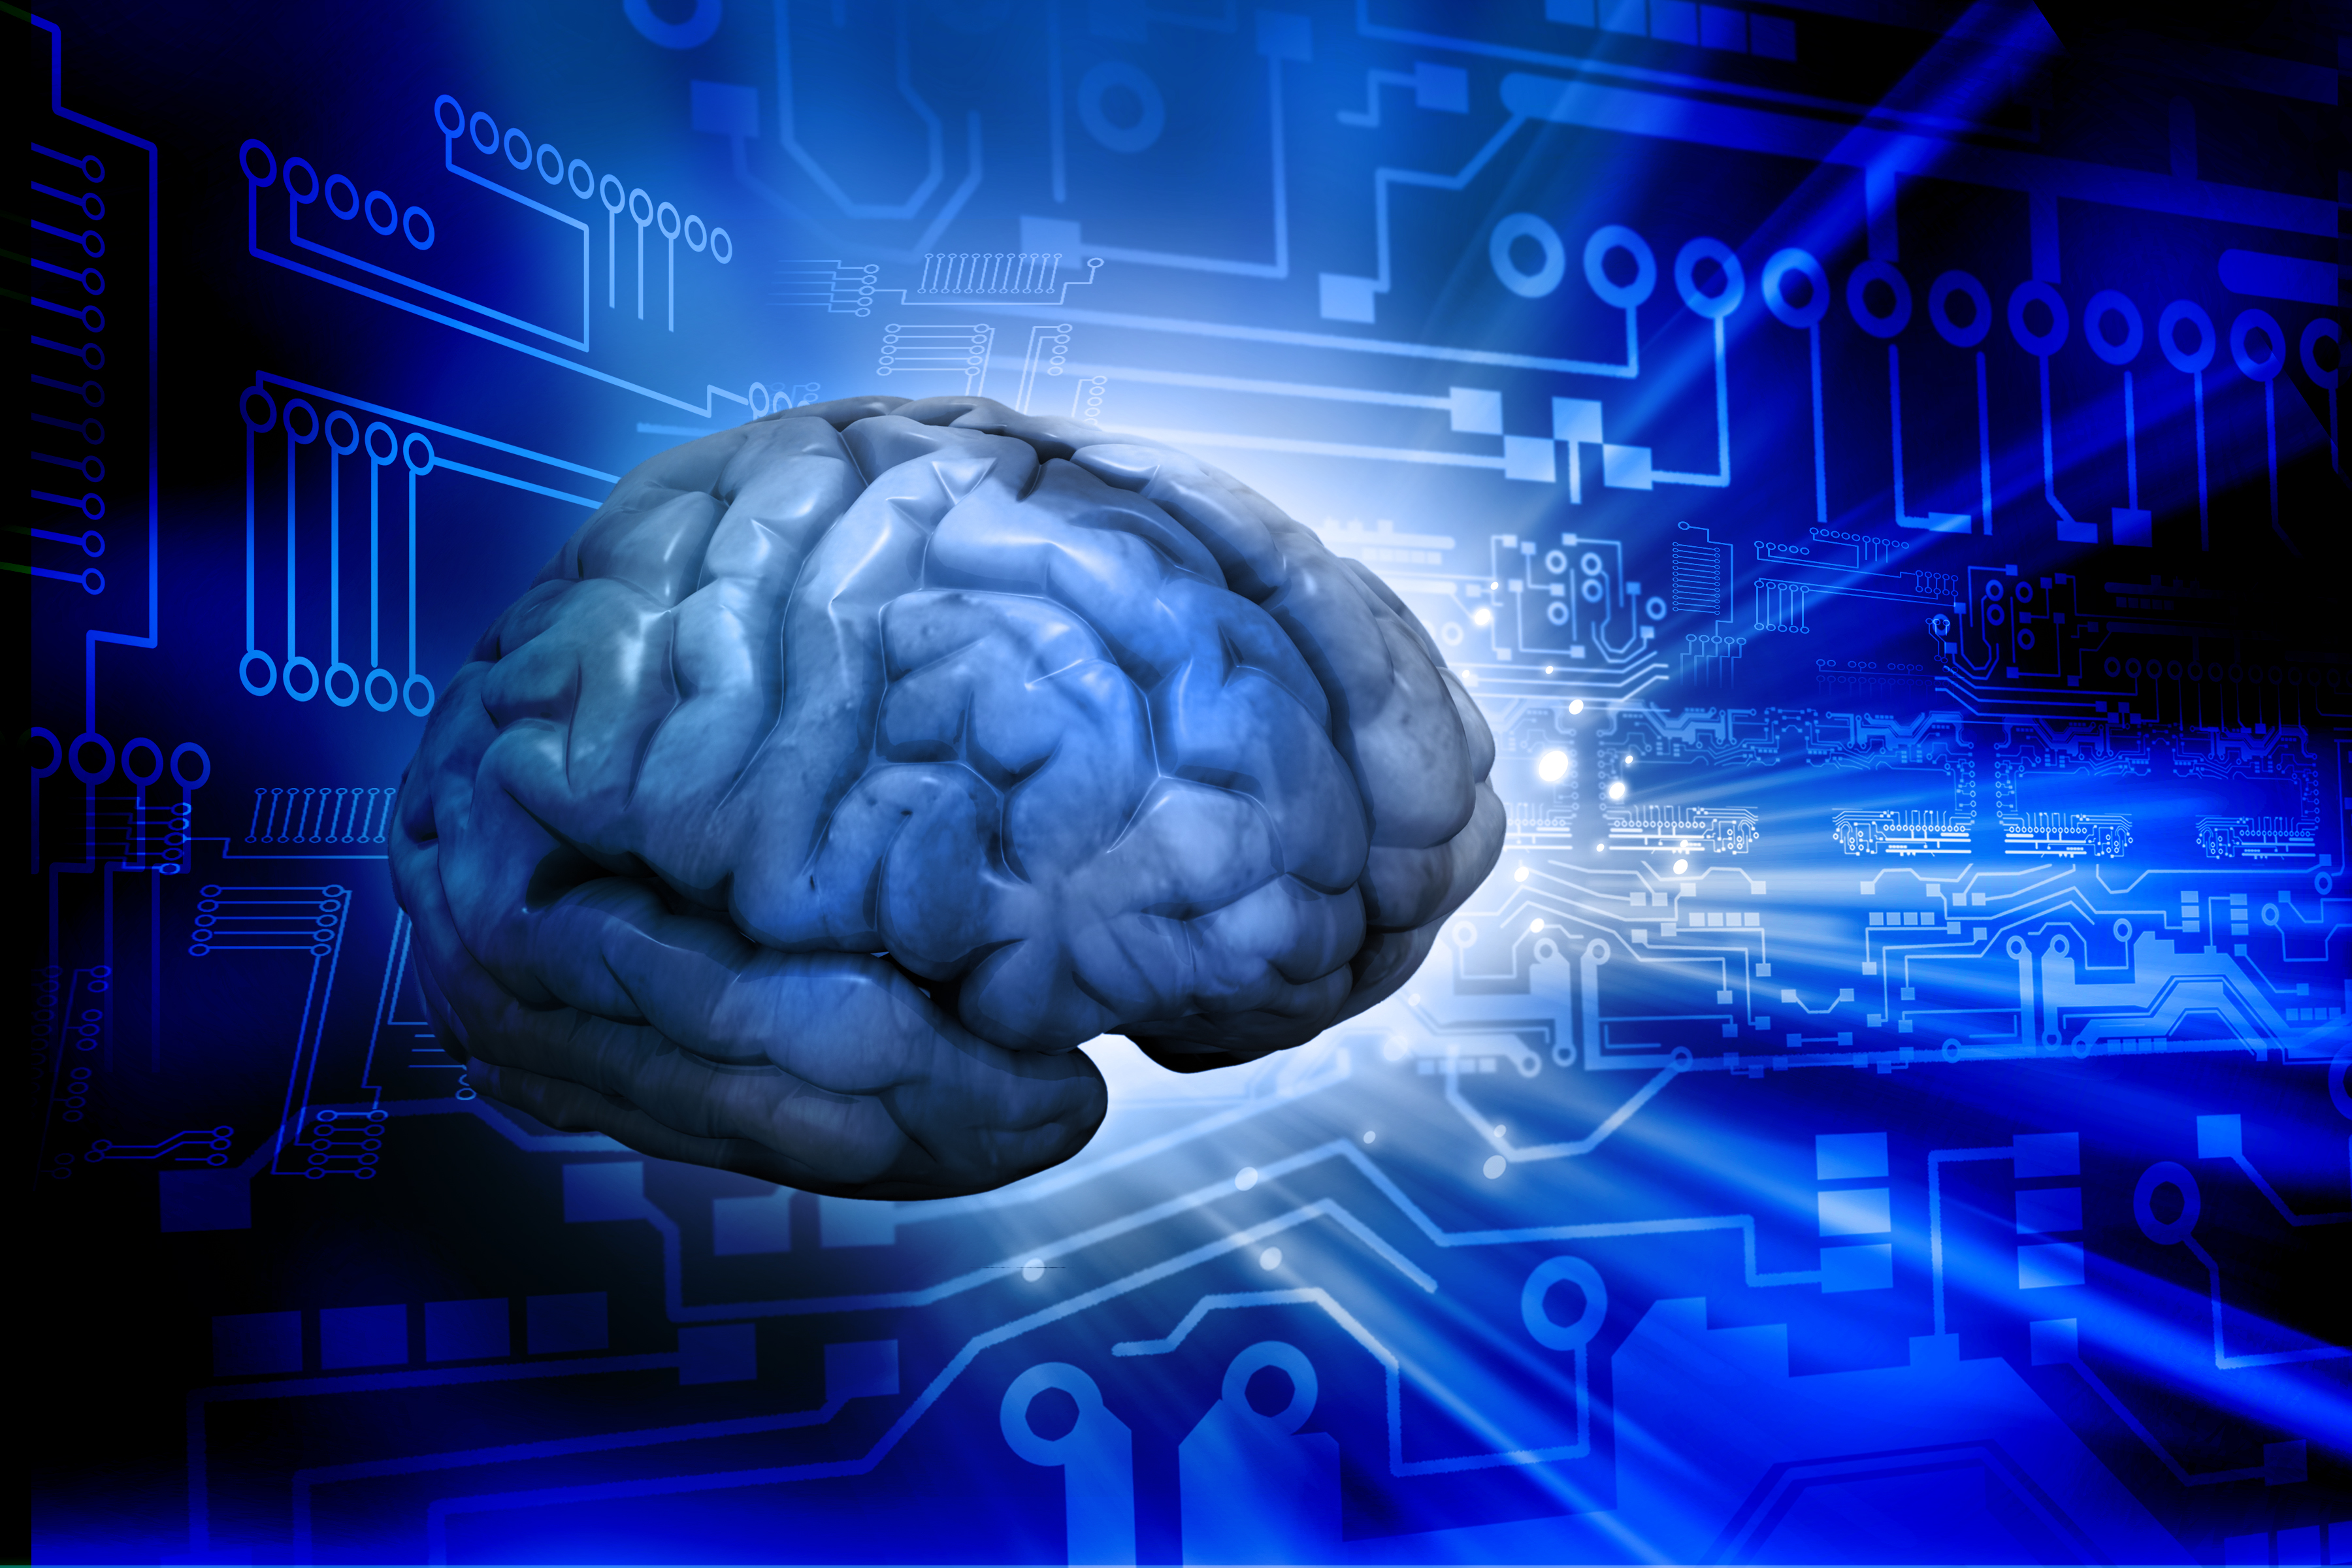 Brain processing. Изучение мозга. Искусственный интеллект. Цифровой мозг.